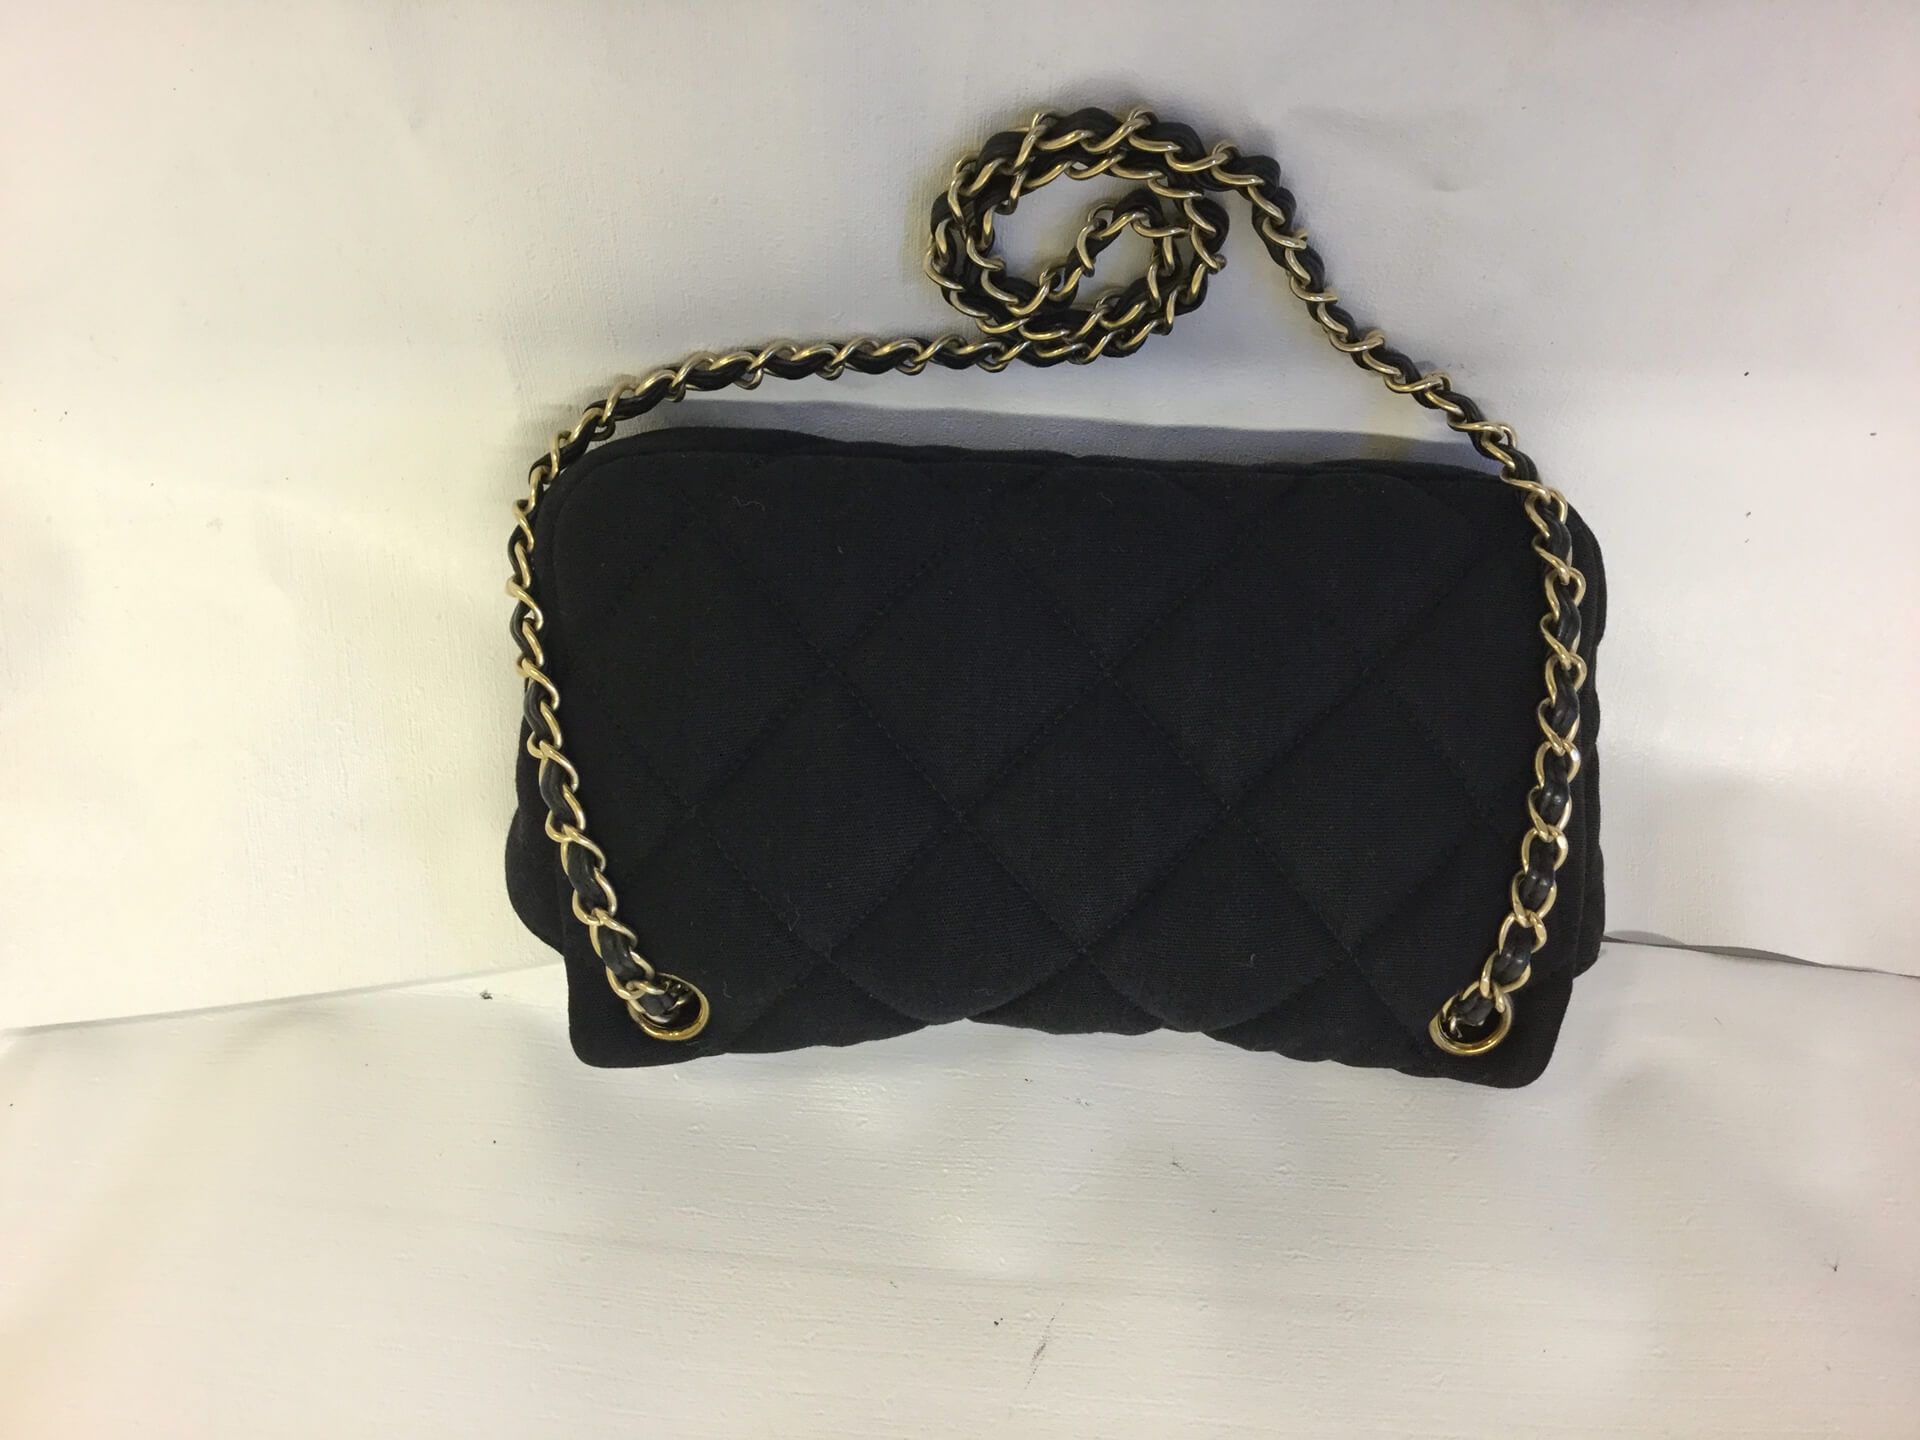 Chanel 2.55 Jersey Black Vintage Shoulder Bag - Image 3 of 5